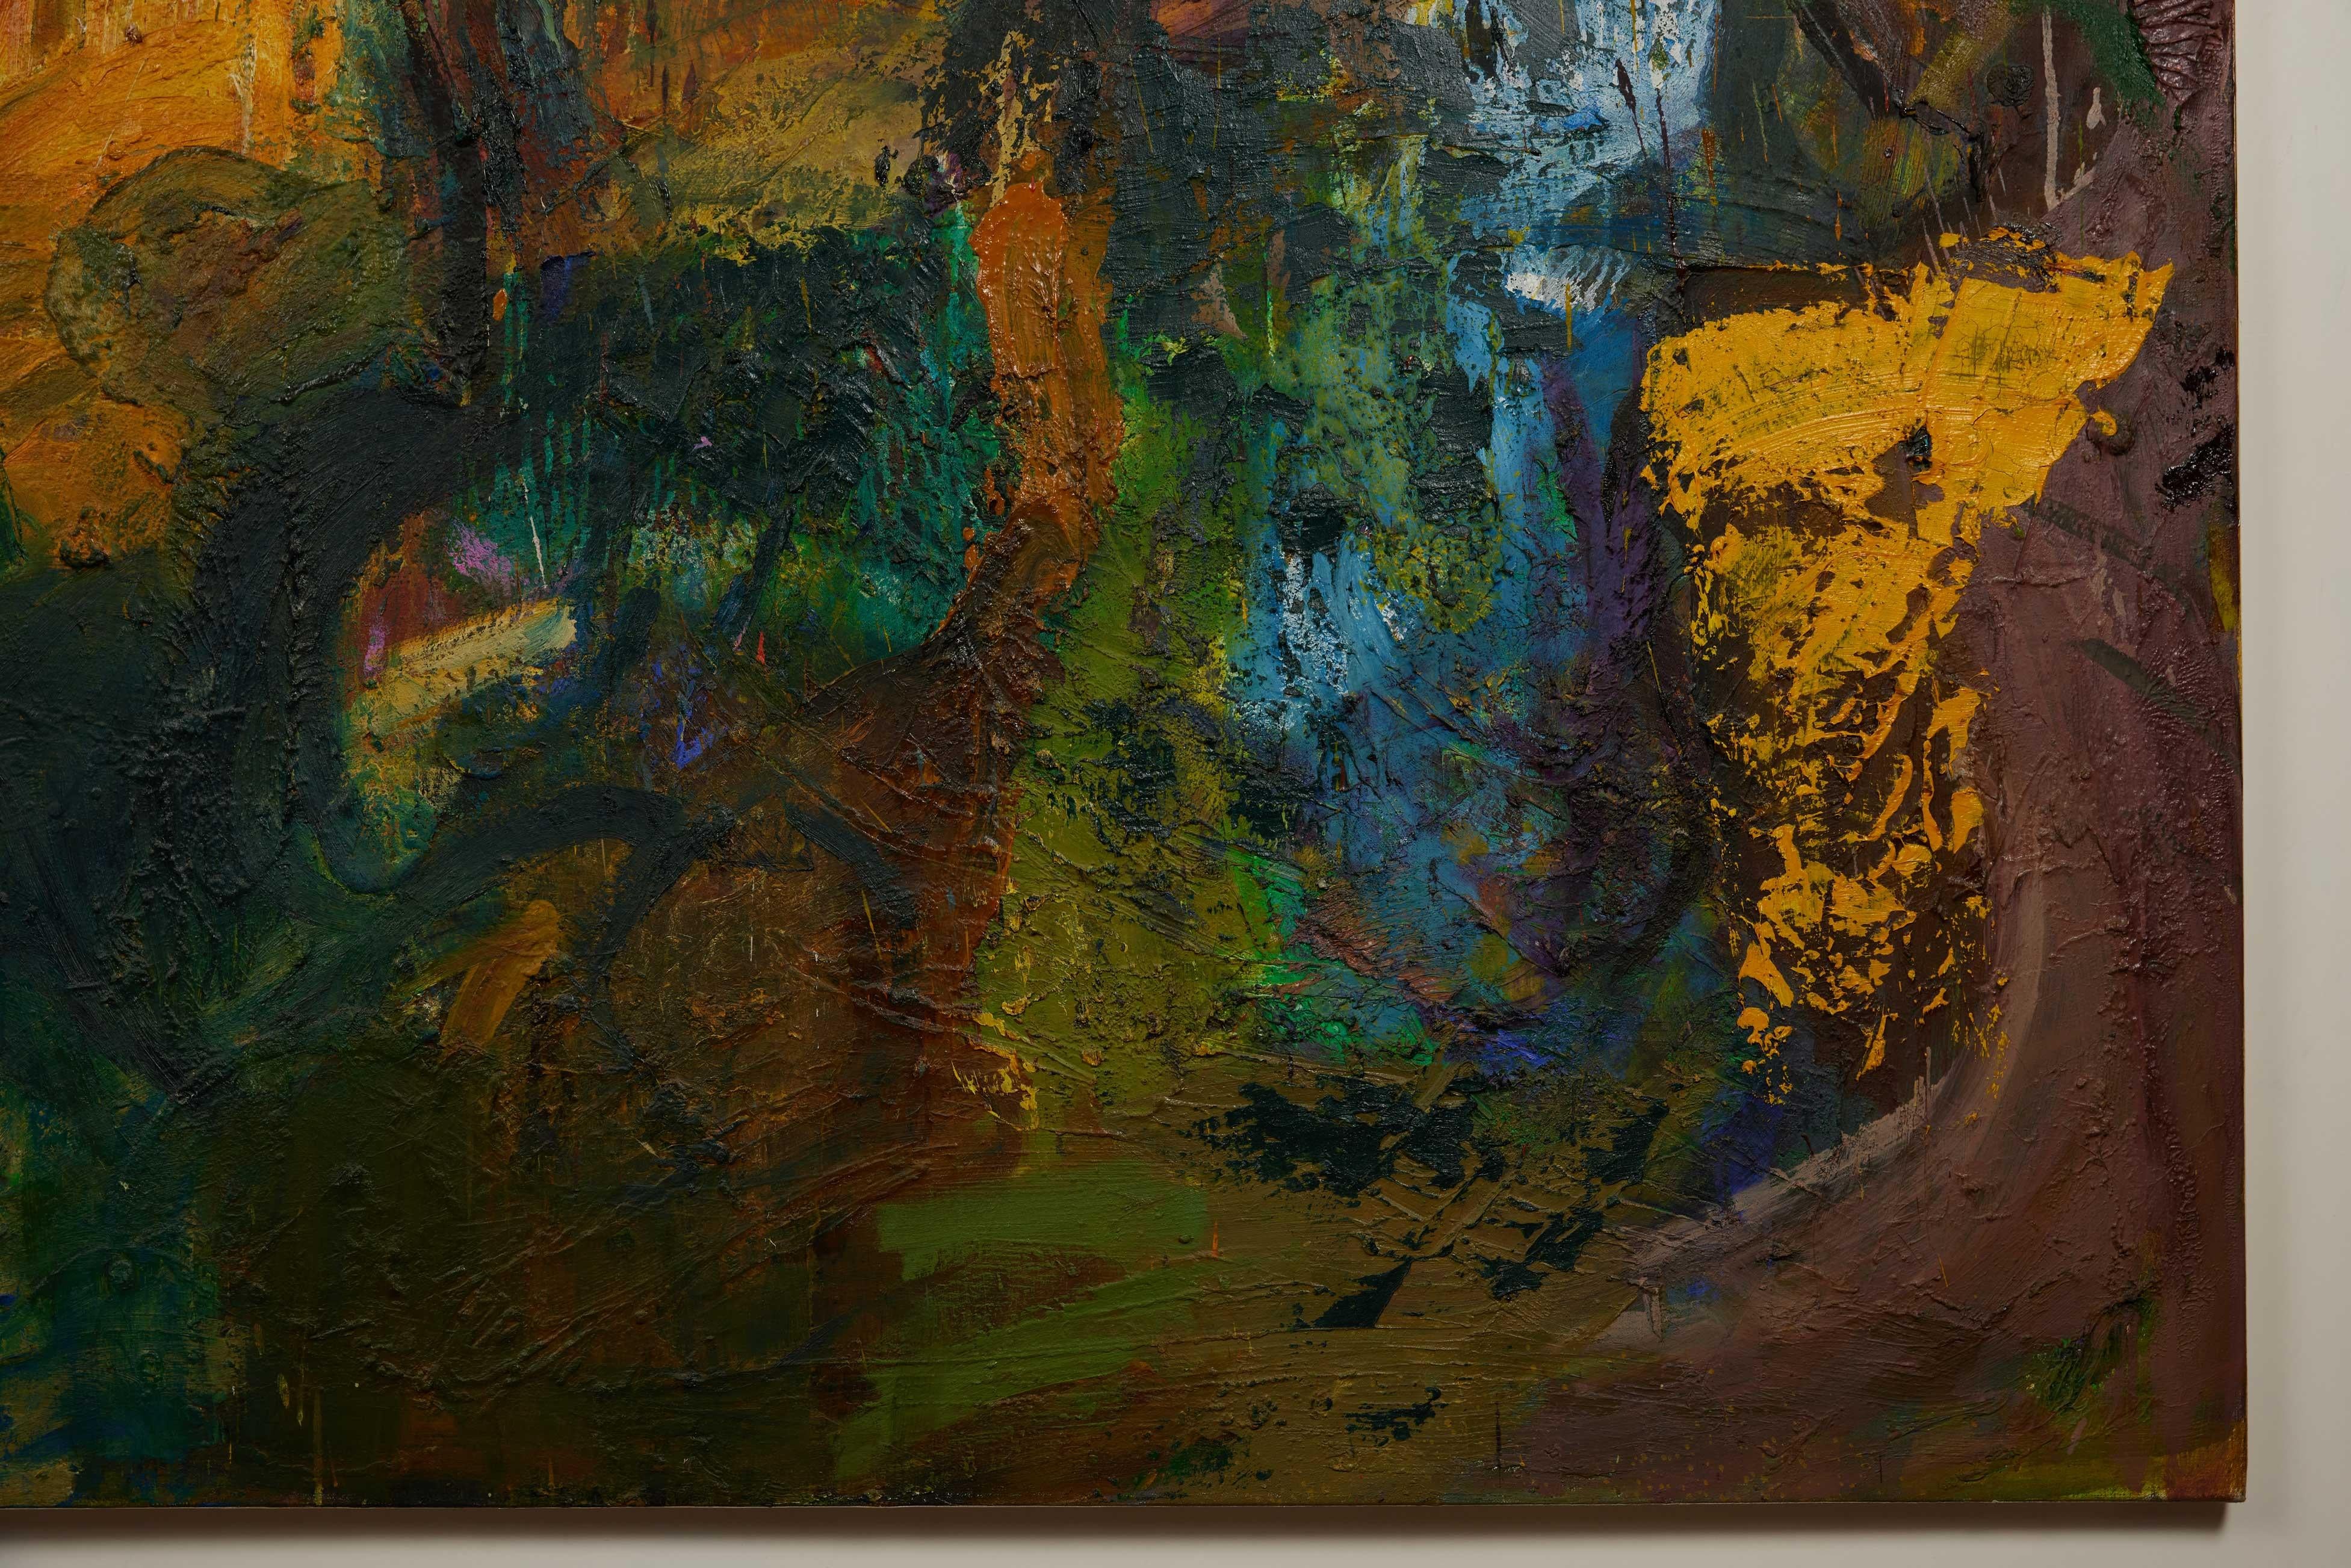 Peinture contemporaine à l'huile sur toile de Lars Dan, présentant un magnifique empâtement moderne de l'artiste danois célèbre.  Une abstraction contemporaine pleine d'une palette multicolore vive dominée par des couleurs vibrantes. 

En regardant